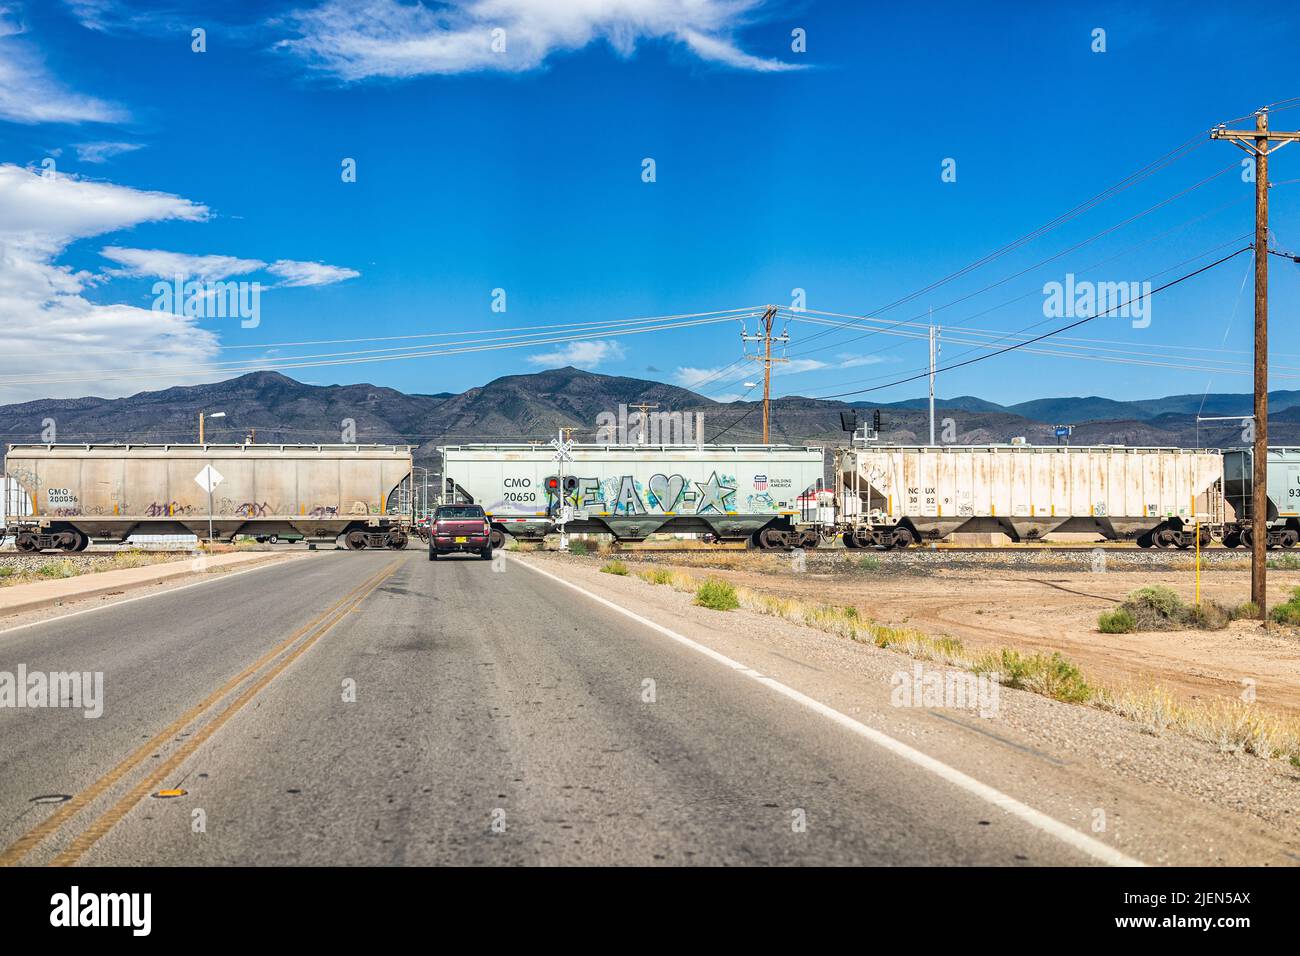 Alamogordo, USA - 9. Juni 2019: Alamogordo, New Mexico City mit Bahnüberfahrt und Auto auf der Straße und Blick auf die Sacramento Berge Stockfoto